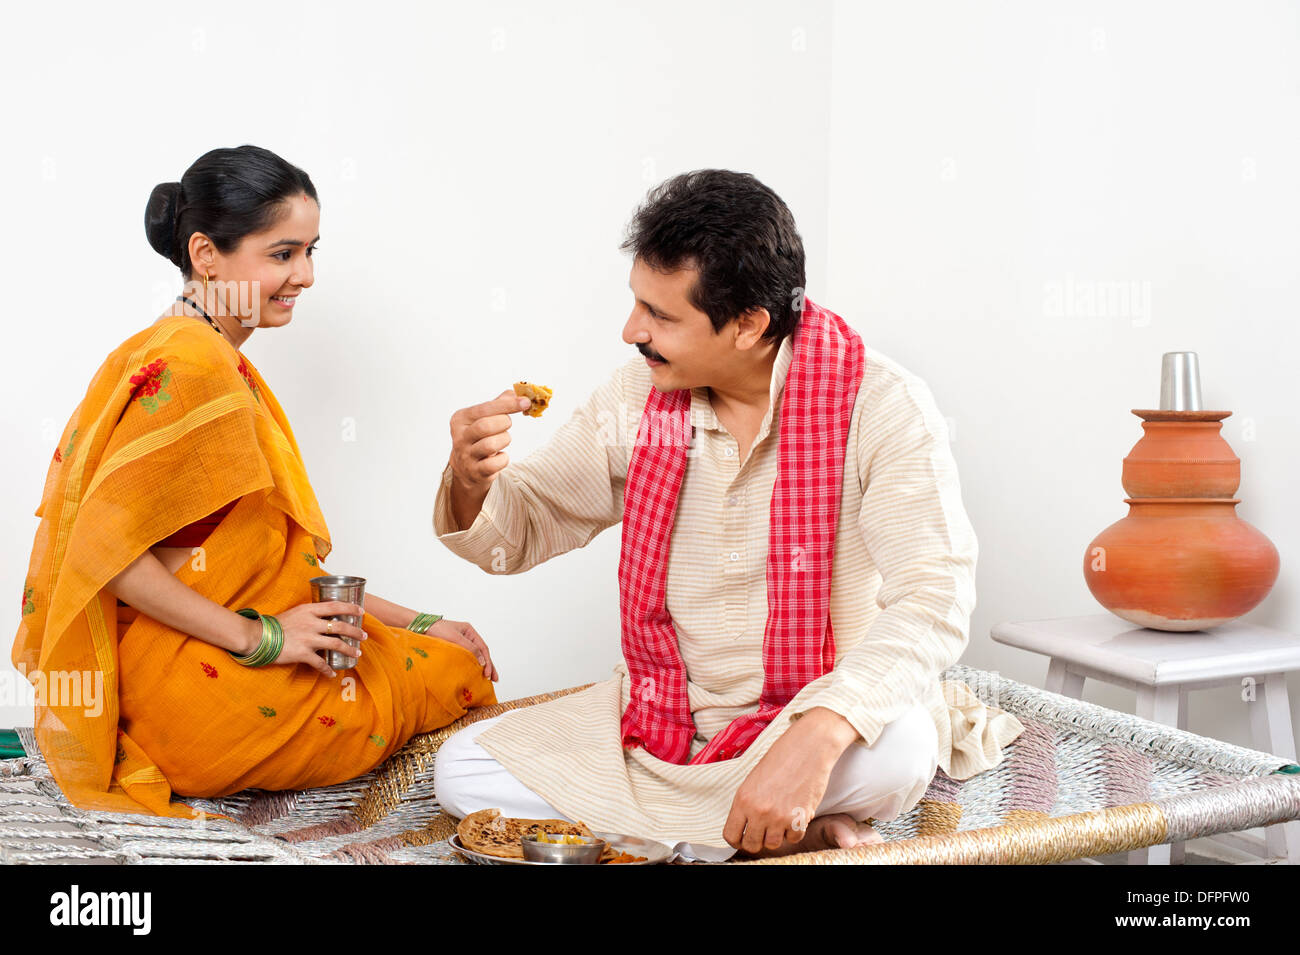 Uomo a mangiare cibo con sua moglie seduta vicino a lui Foto Stock